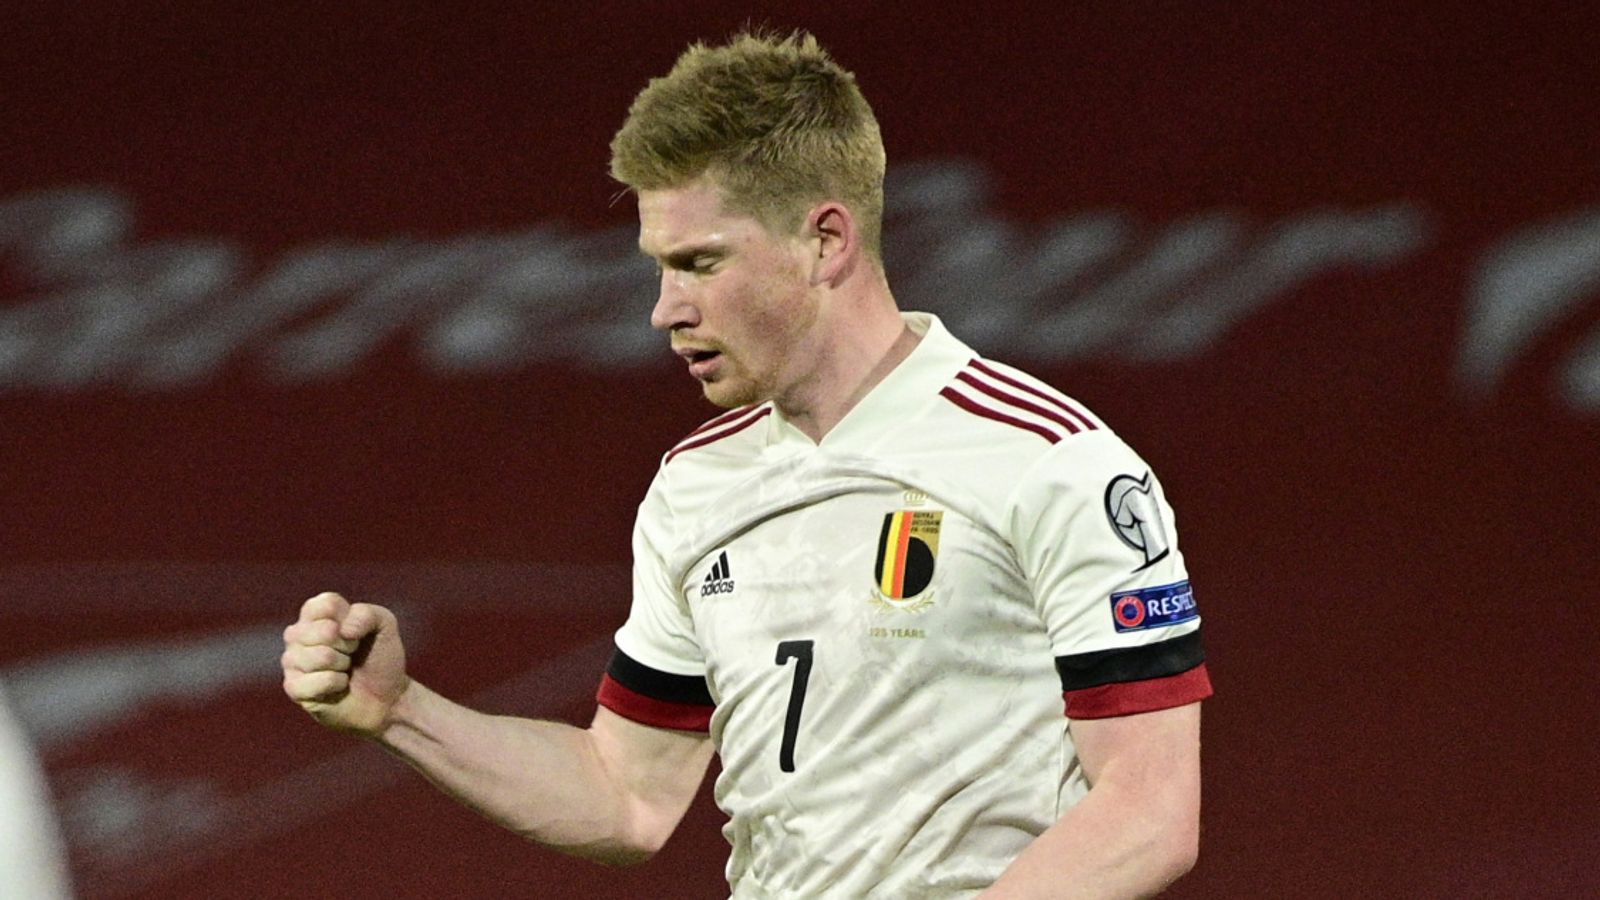 Tuyển Bỉ trước nguy cơ lụn bại ở EURO 2020 - Bóng Đá